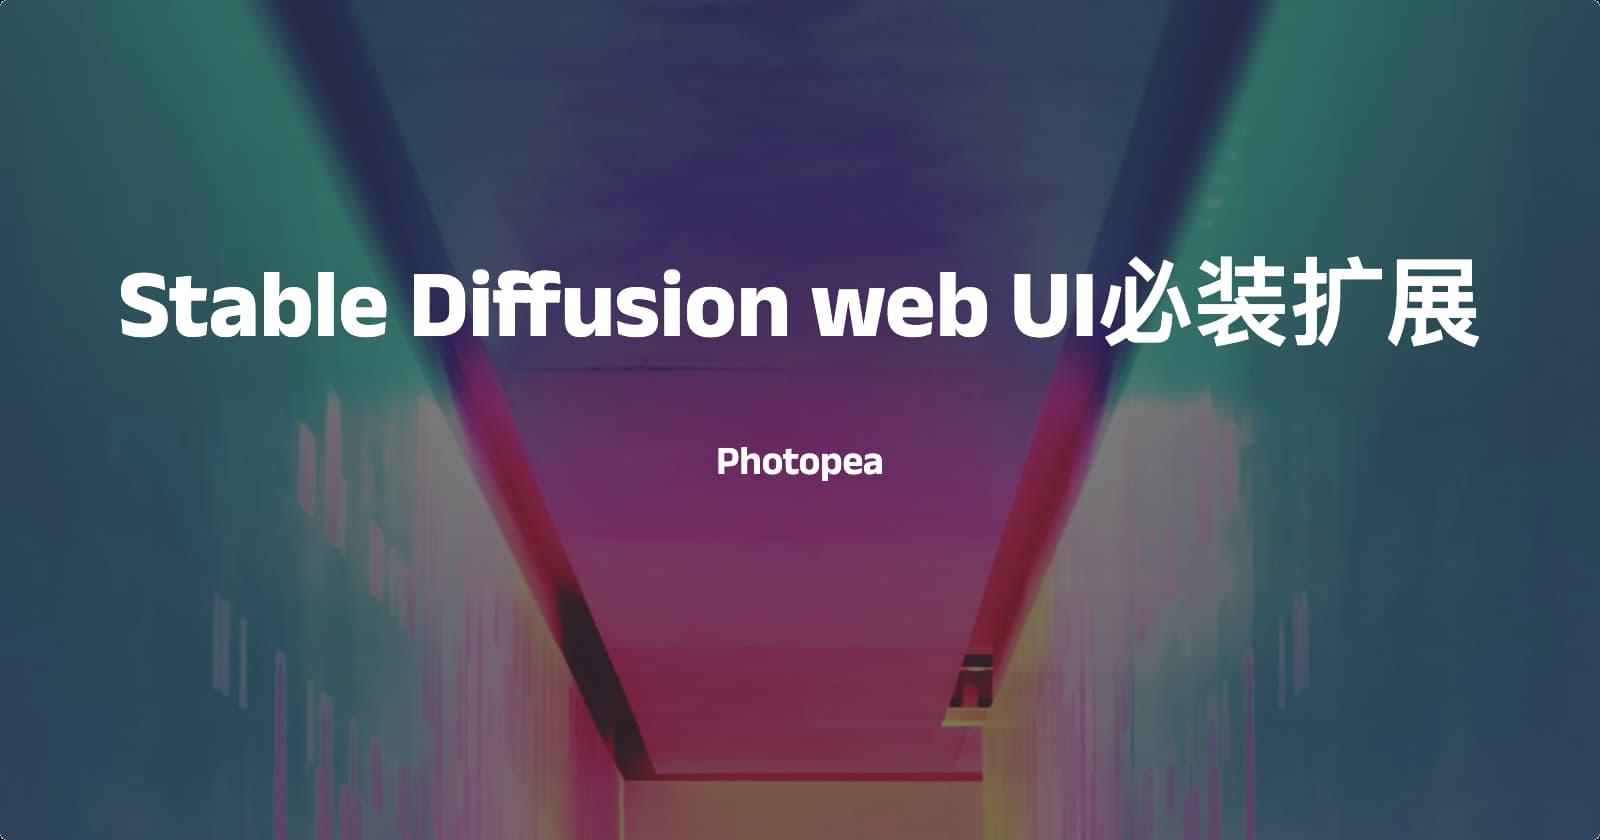 Stable Diffusion web UI必装扩展-Photopea